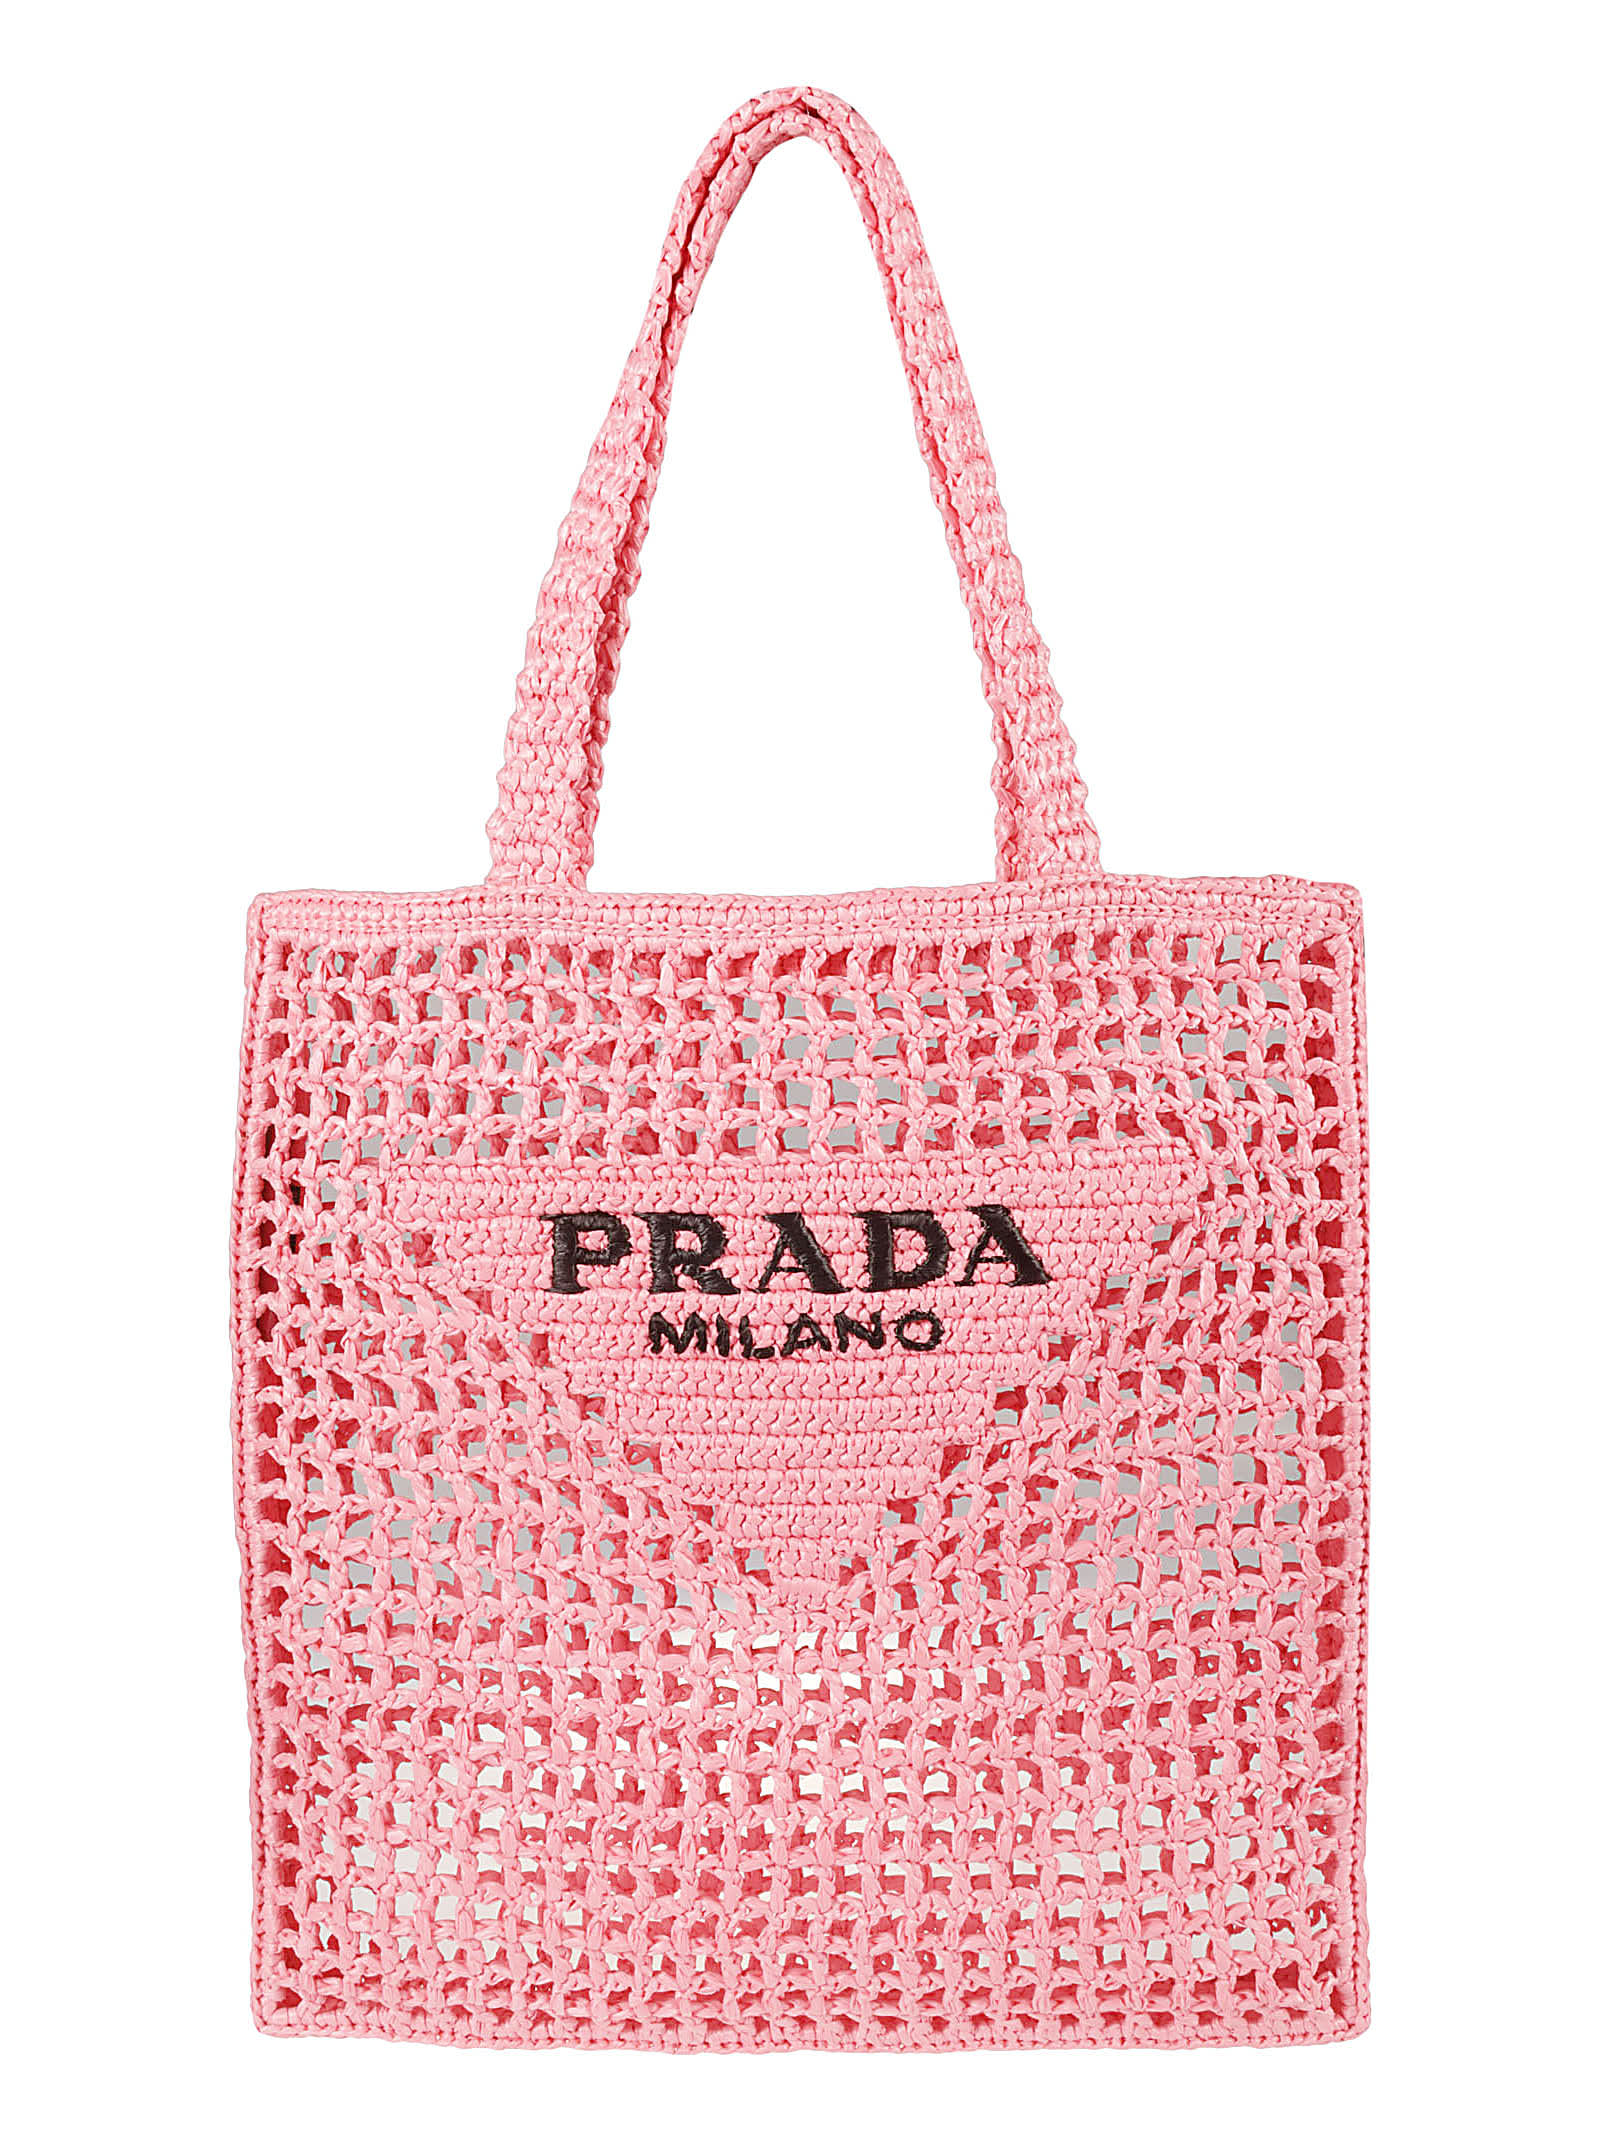 Prada Women's Logo Tote Bag